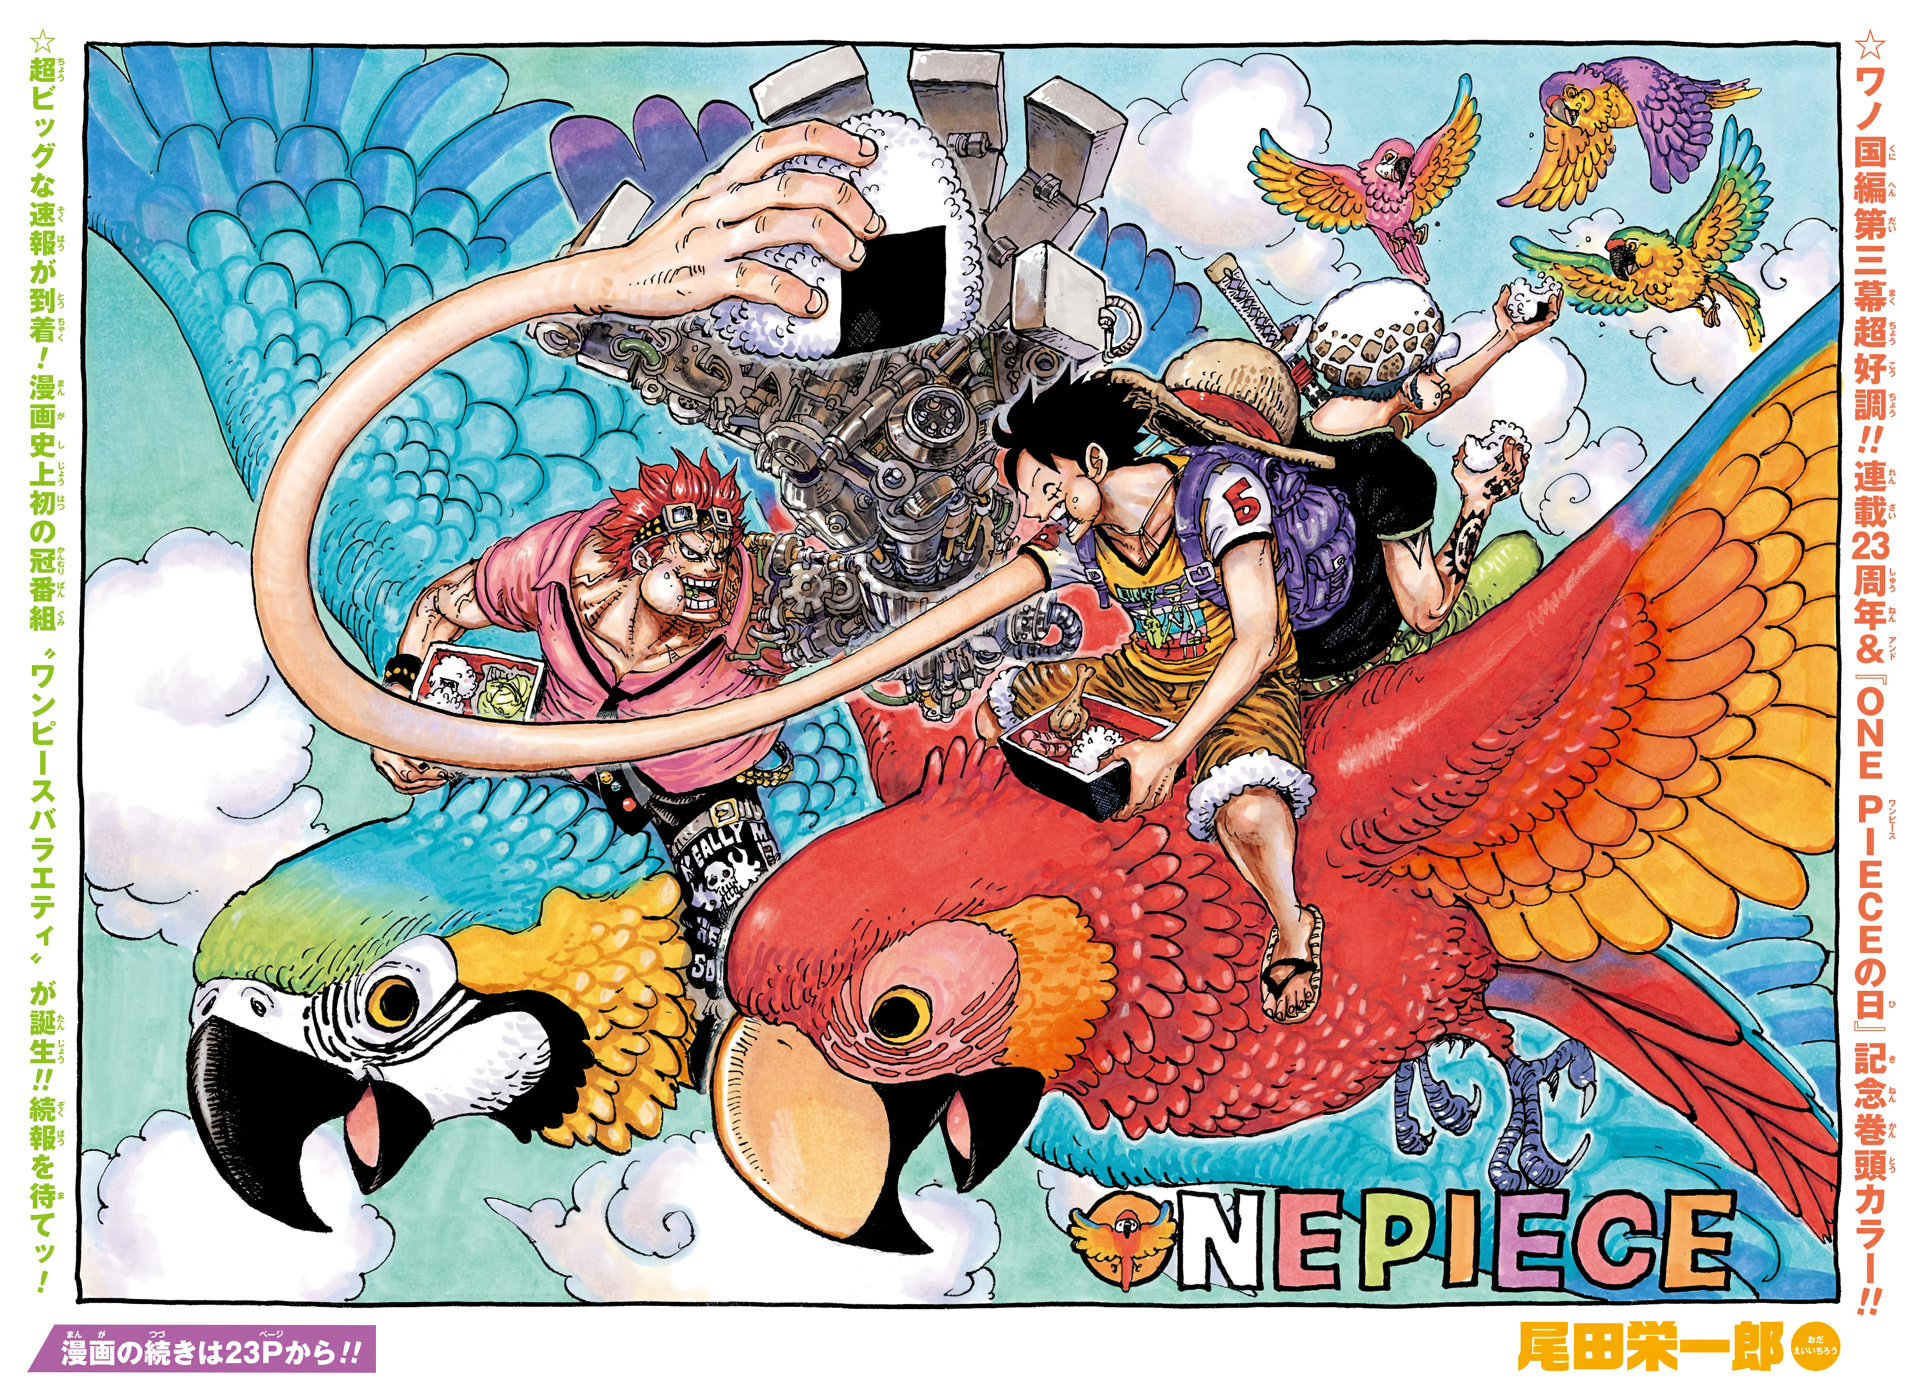 Chapitre 985 One Piece Encyclopedie Fandom